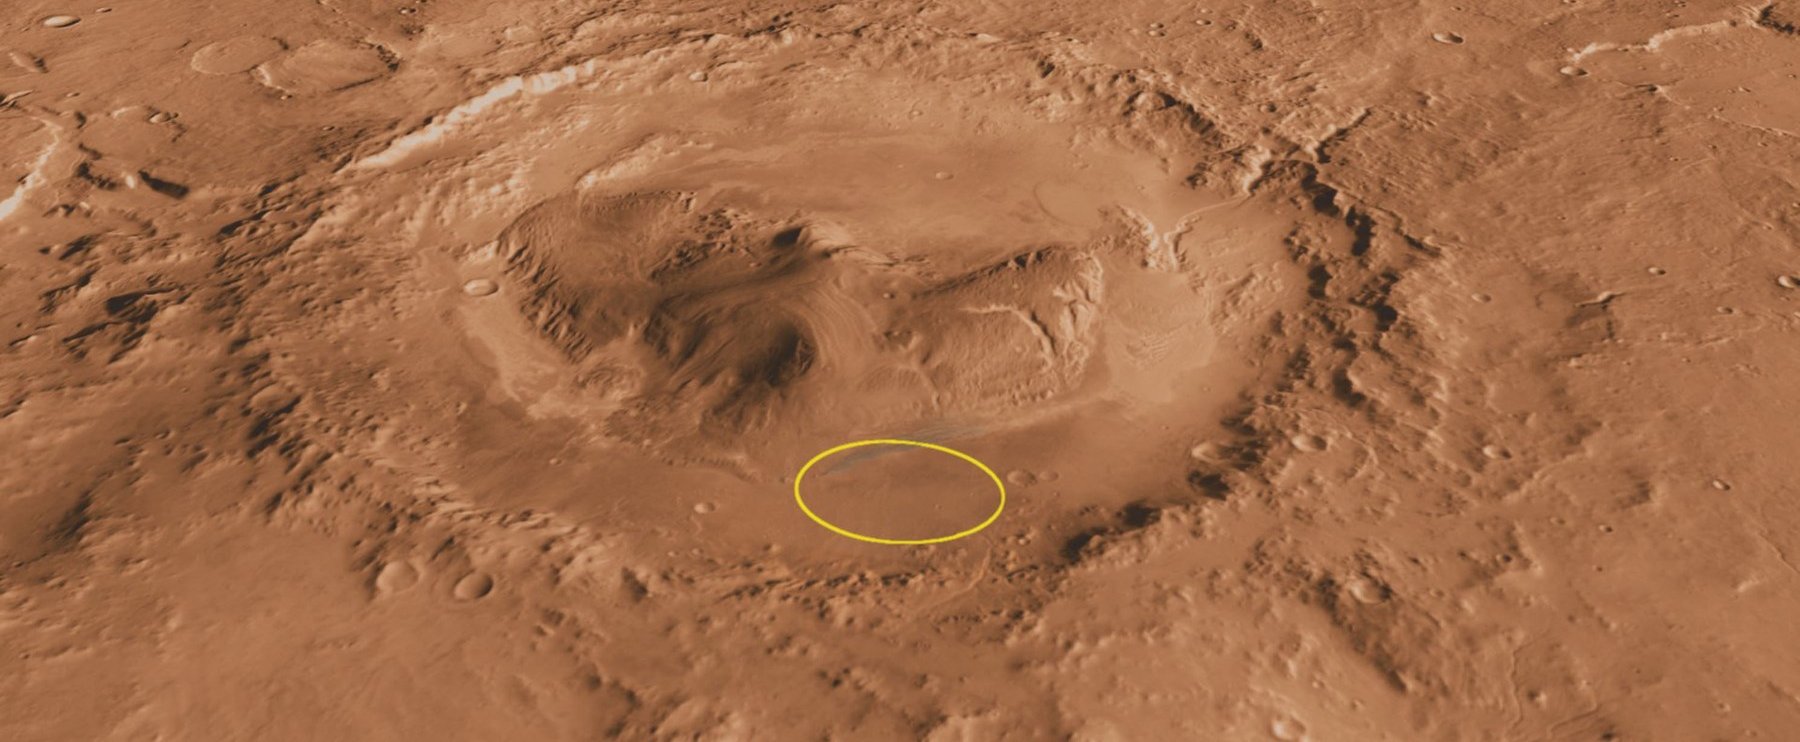 Végre előbújt, most először látták a Marson, világszenzáció